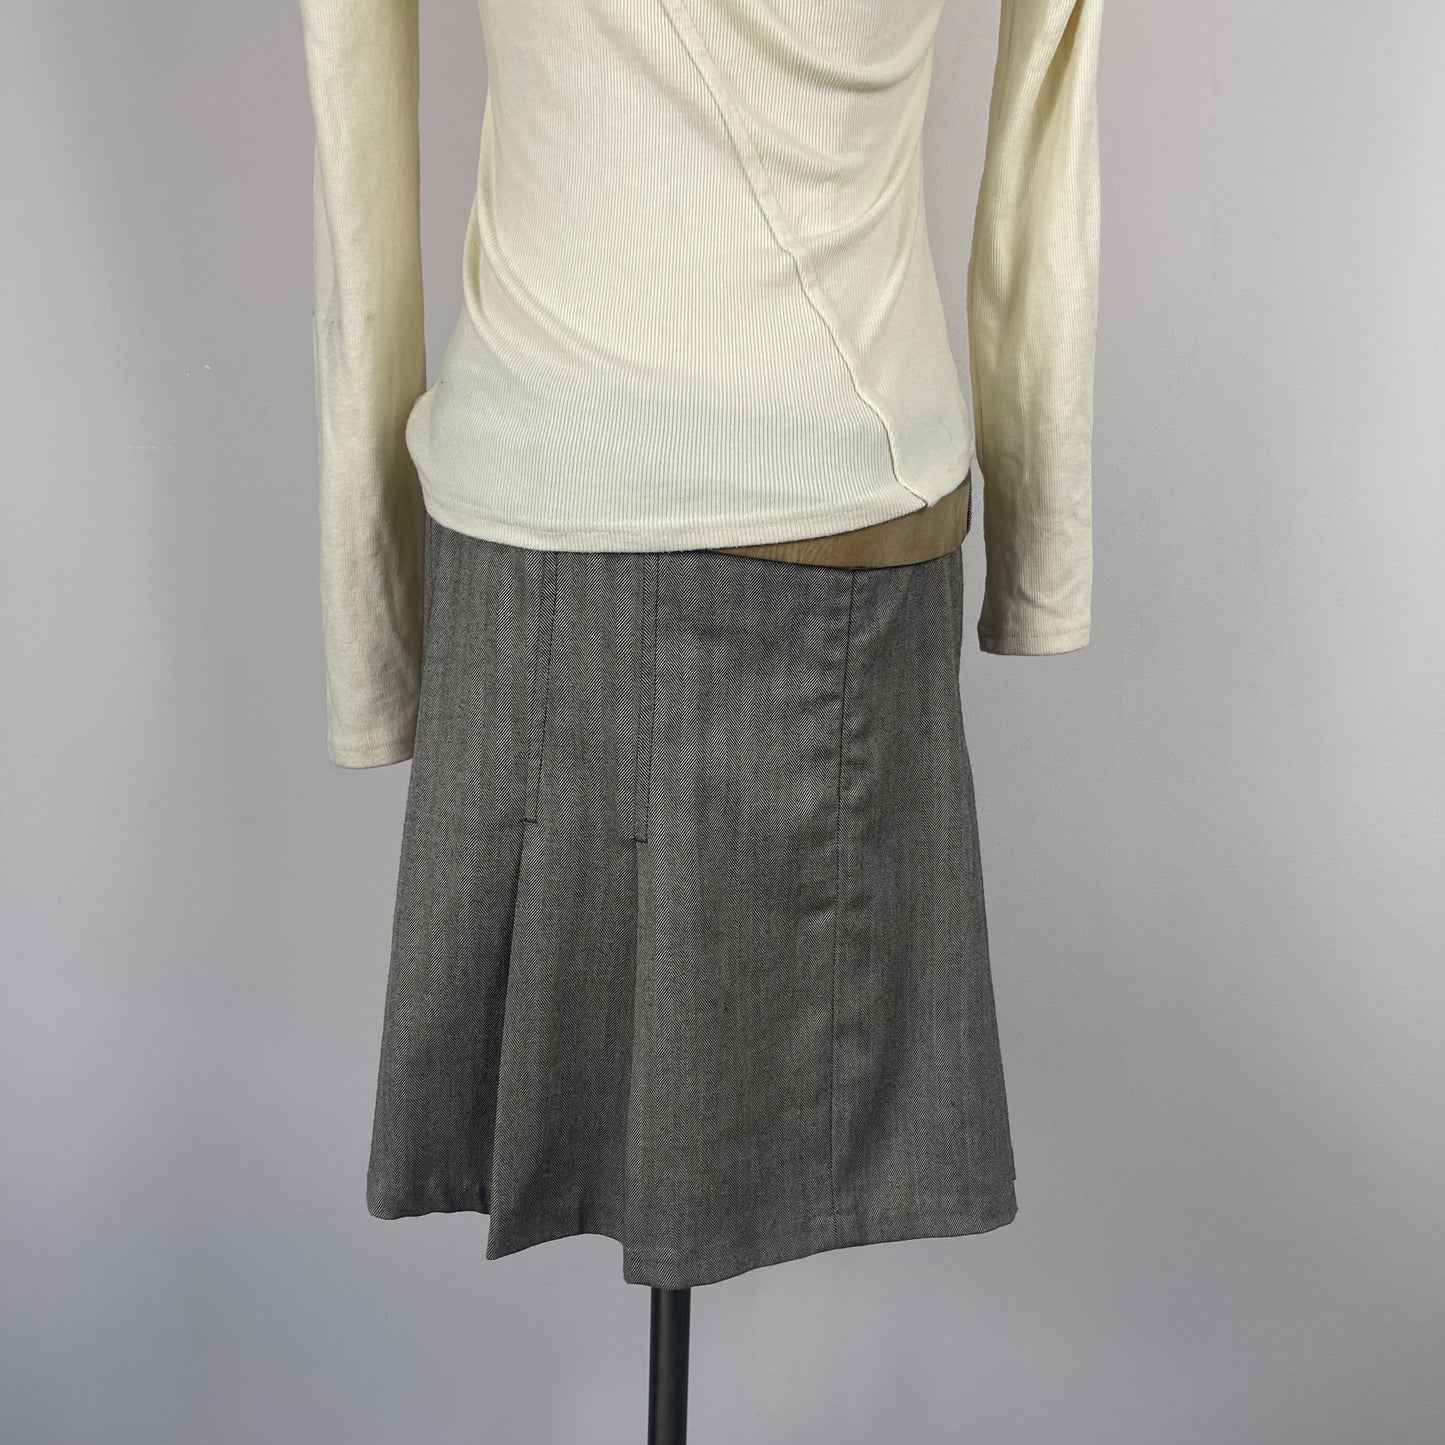 Vintage Brown Pleated Mini Skirt